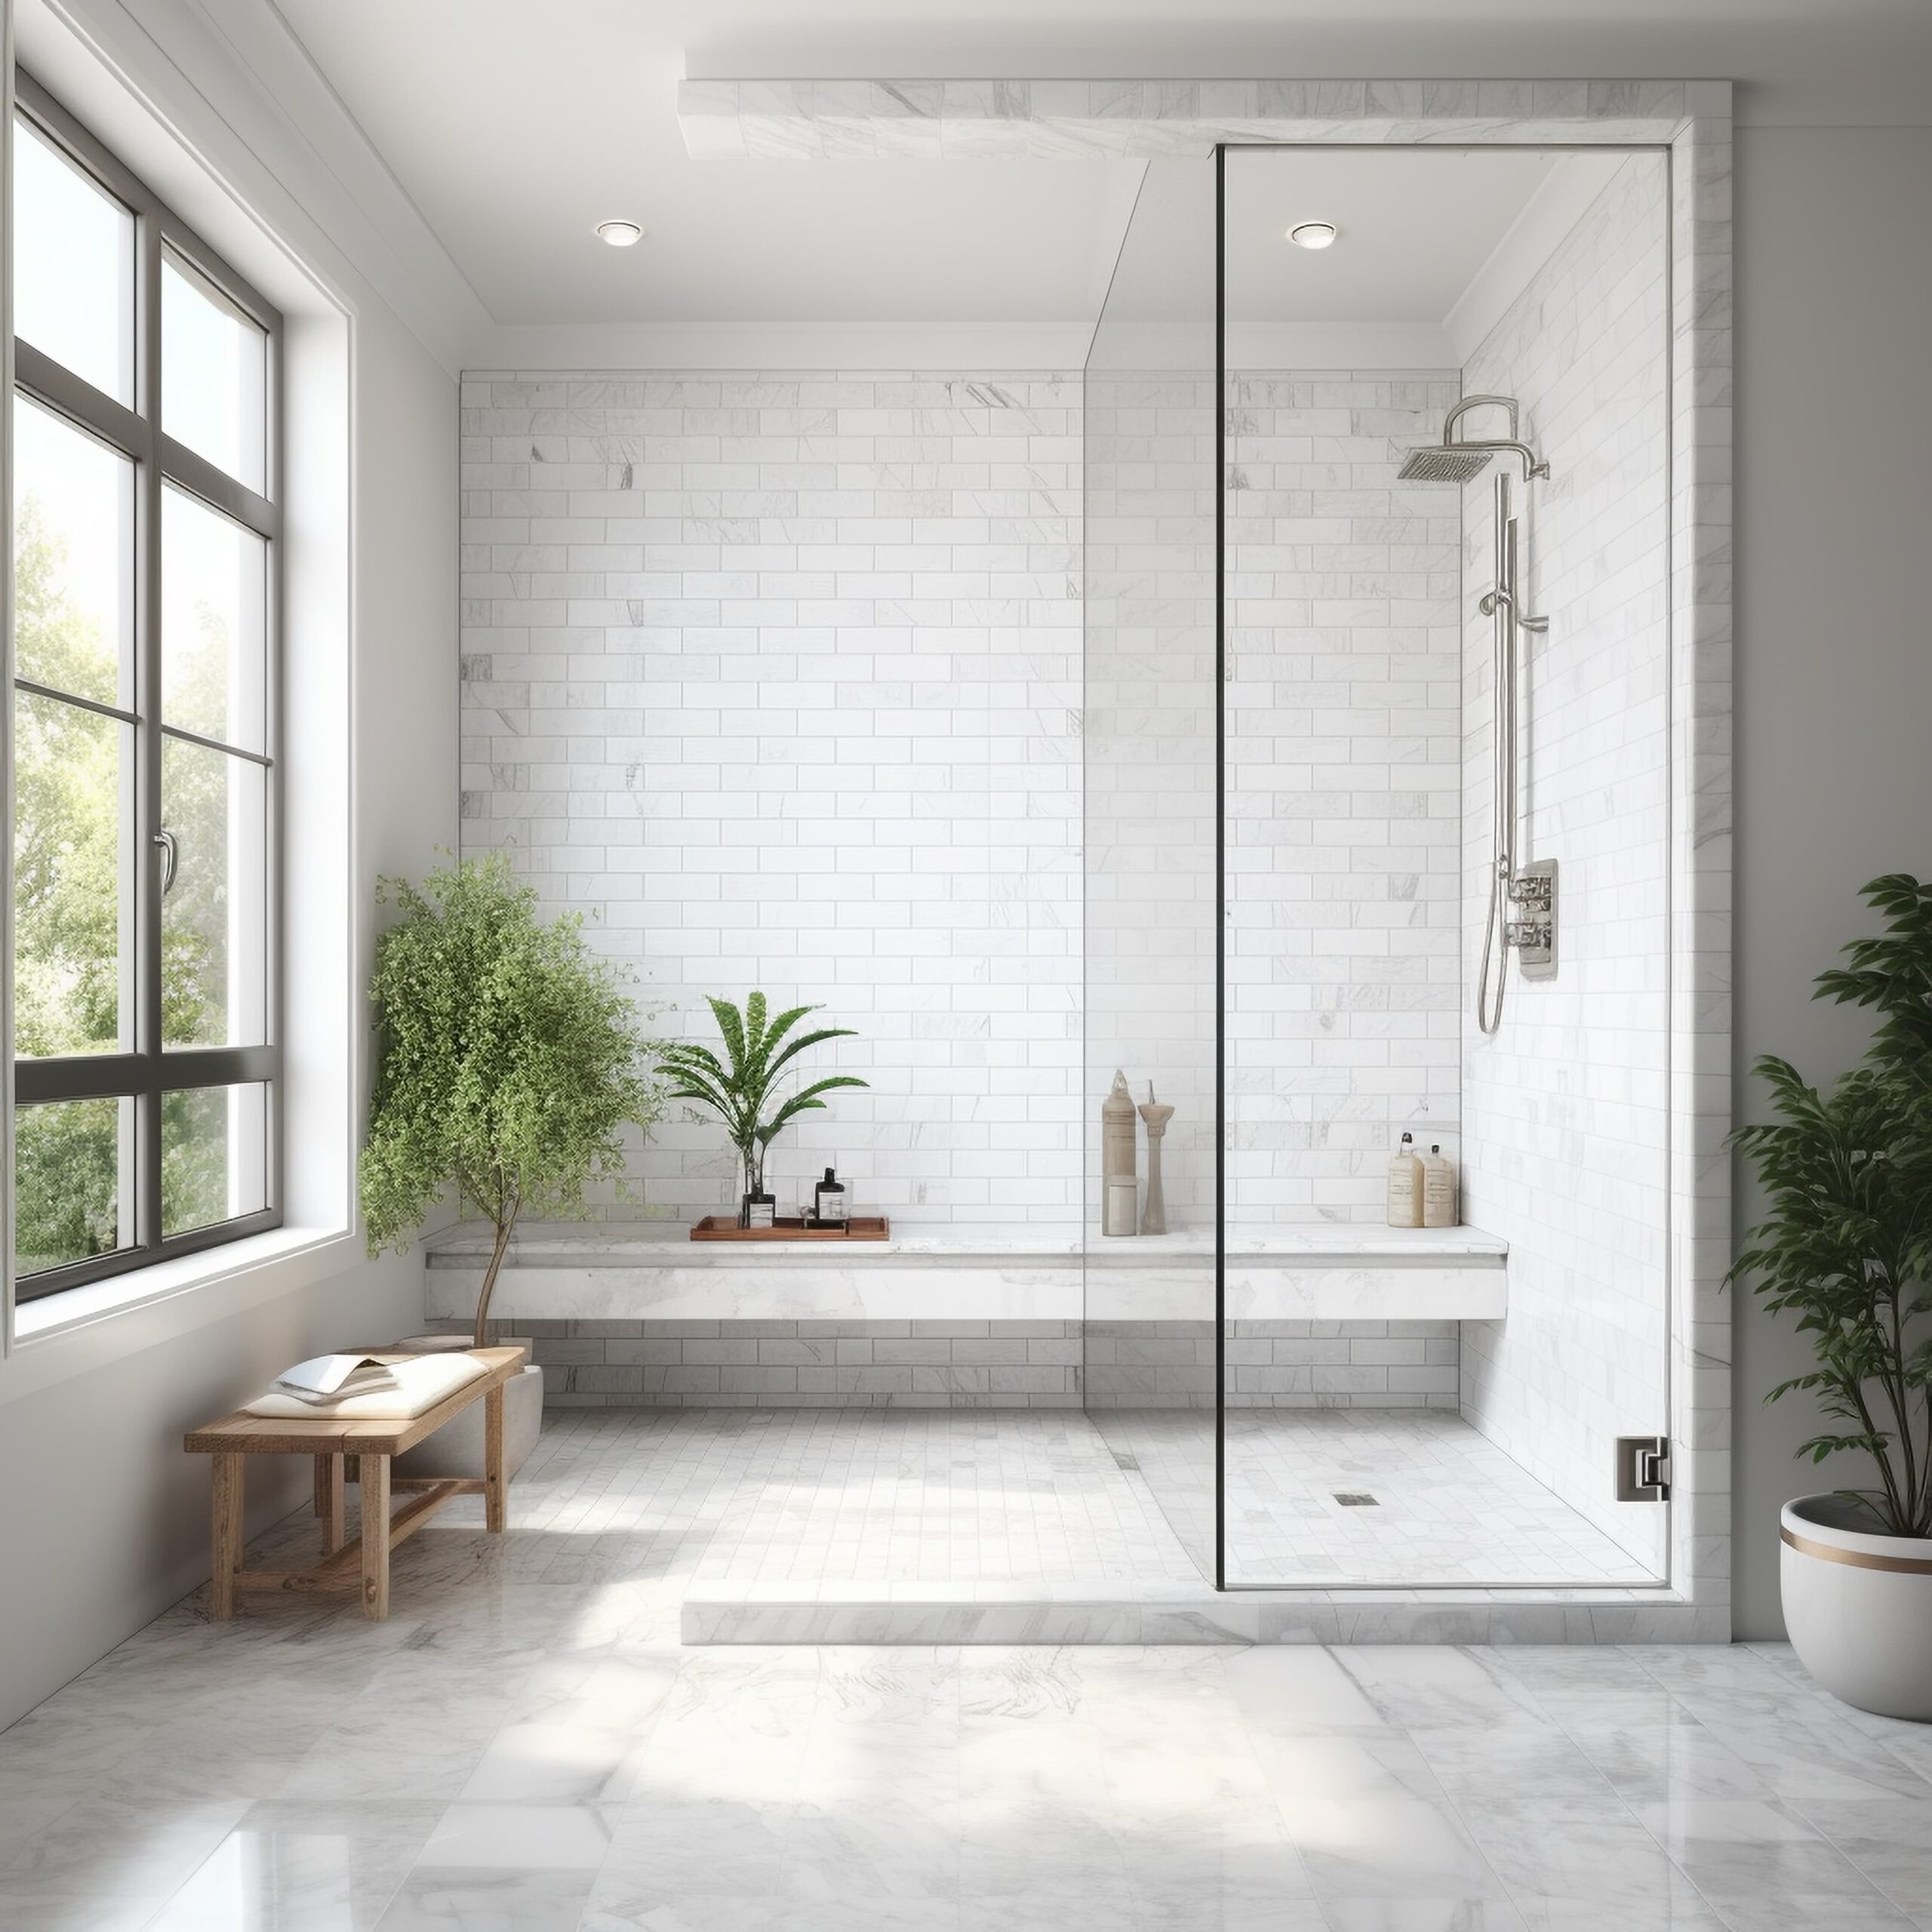 Platos de ducha en baños grandes, adaptándose a la modernidad